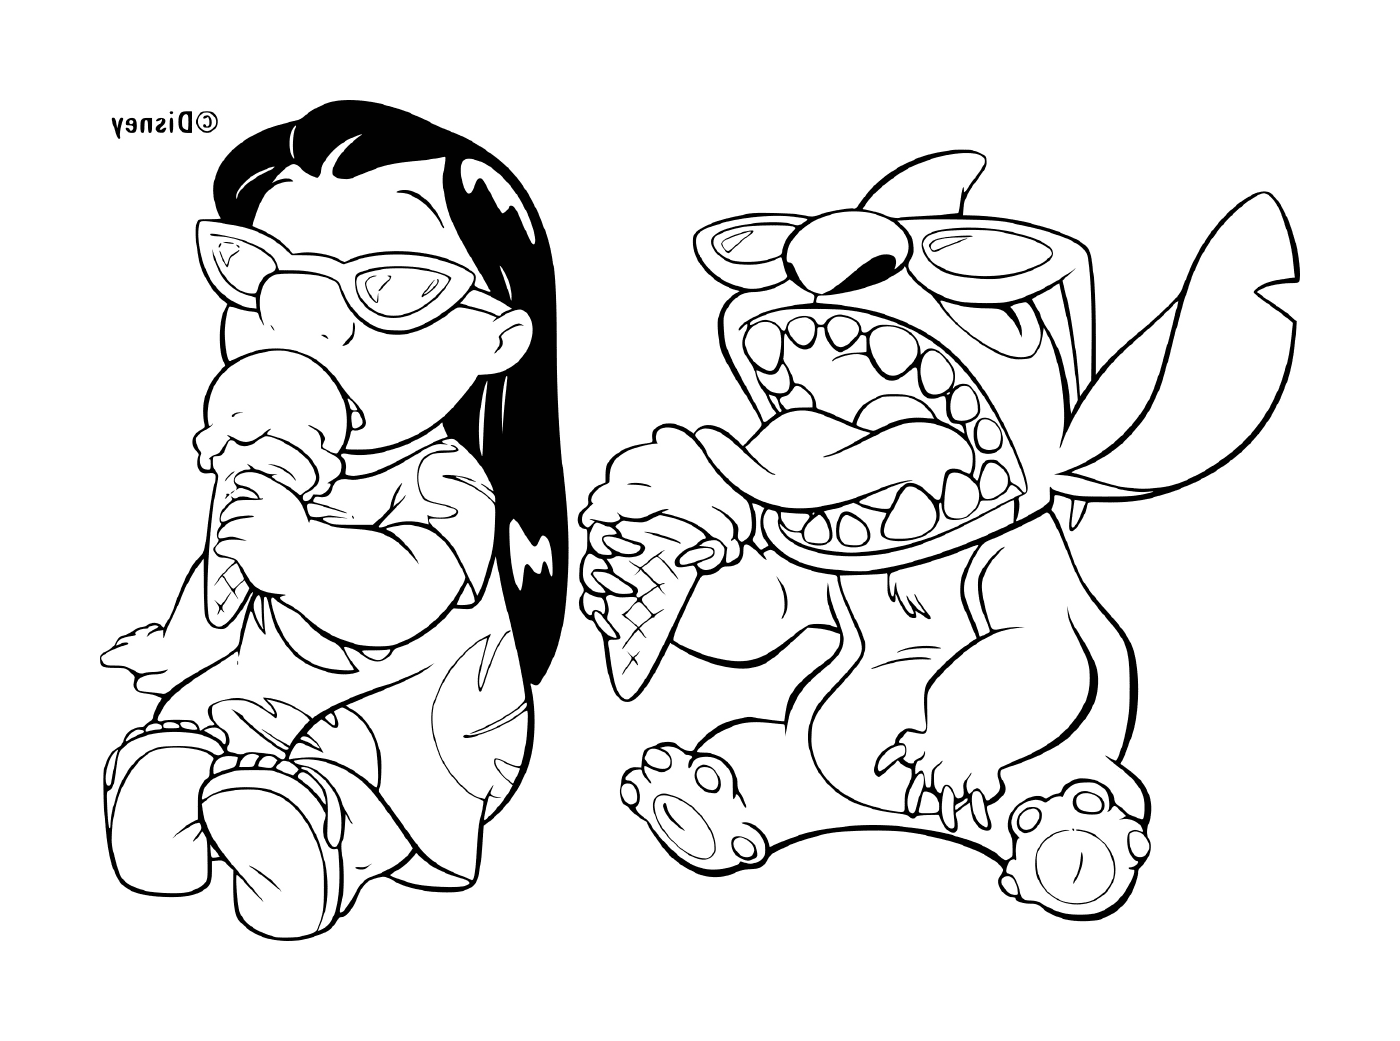   Deux personnages de dessin animé, dont l'un mange une part de pizza 